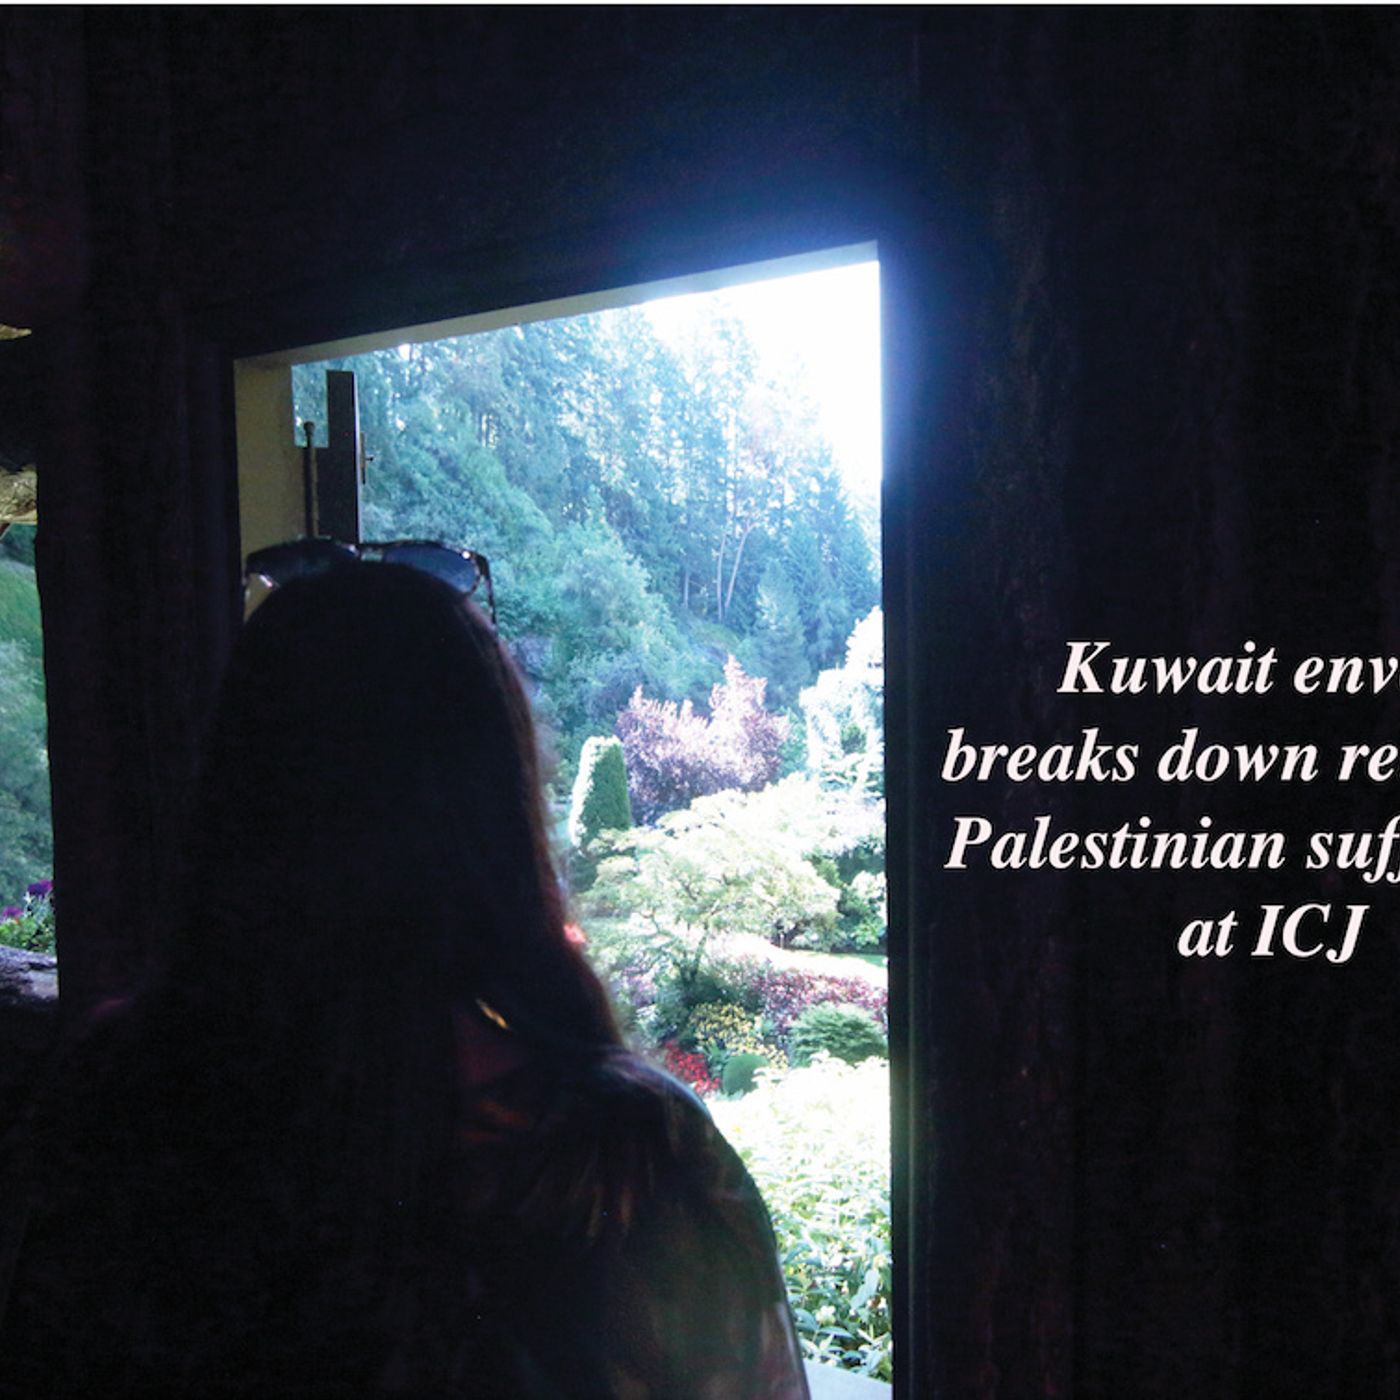 Kuwait envoy relaying Palestinian suffering at ICJ